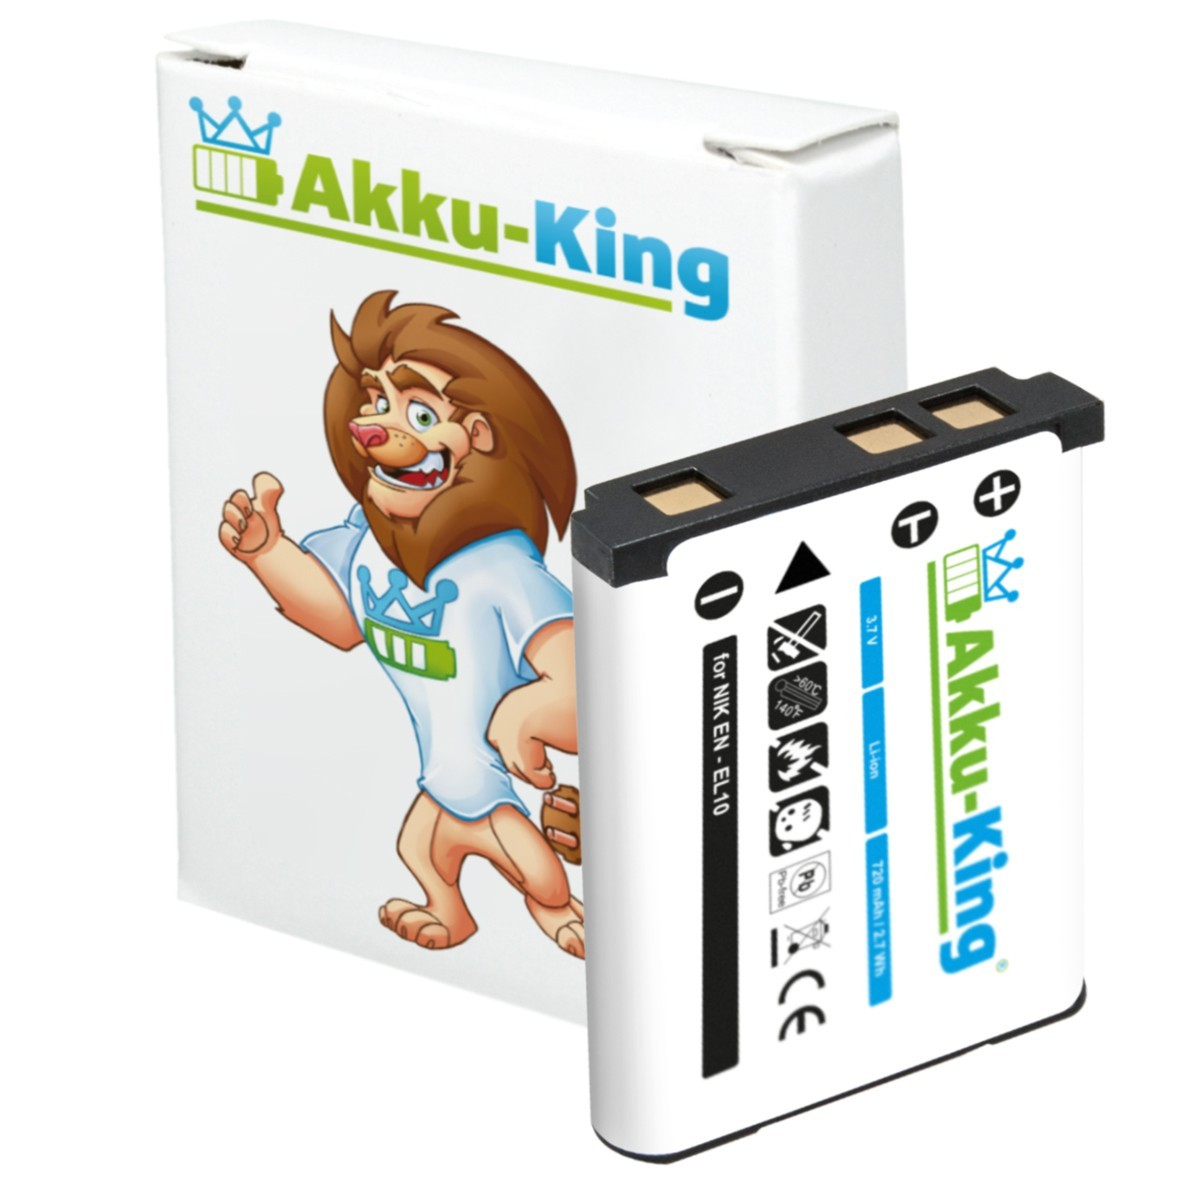 AKKU-KING Akku Volt, Kamera-Akku, kompatibel 3.7 Li-Ion Traveler 720mAh DS-5370 mit